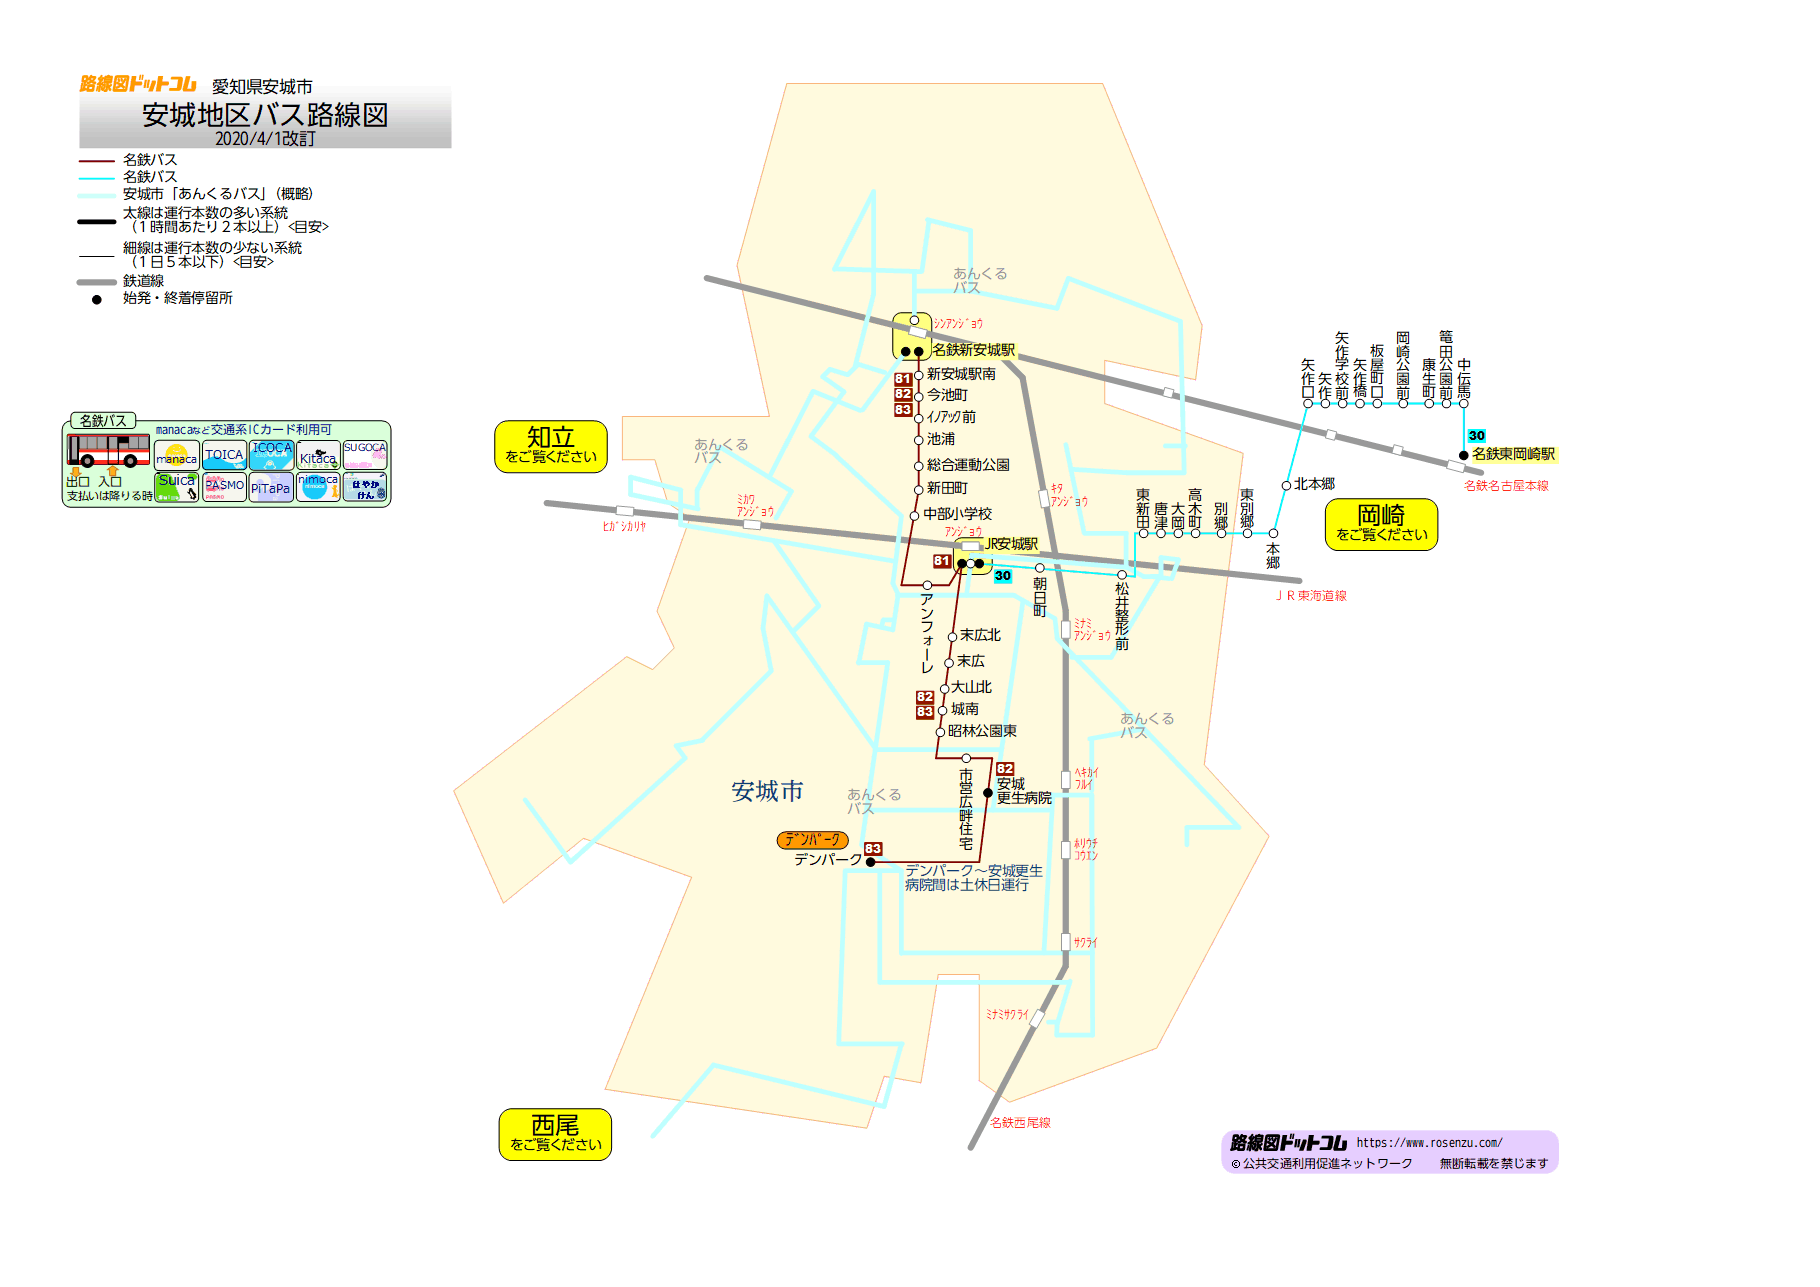 路線図ドットコム 愛知県 安城地区バス路線図